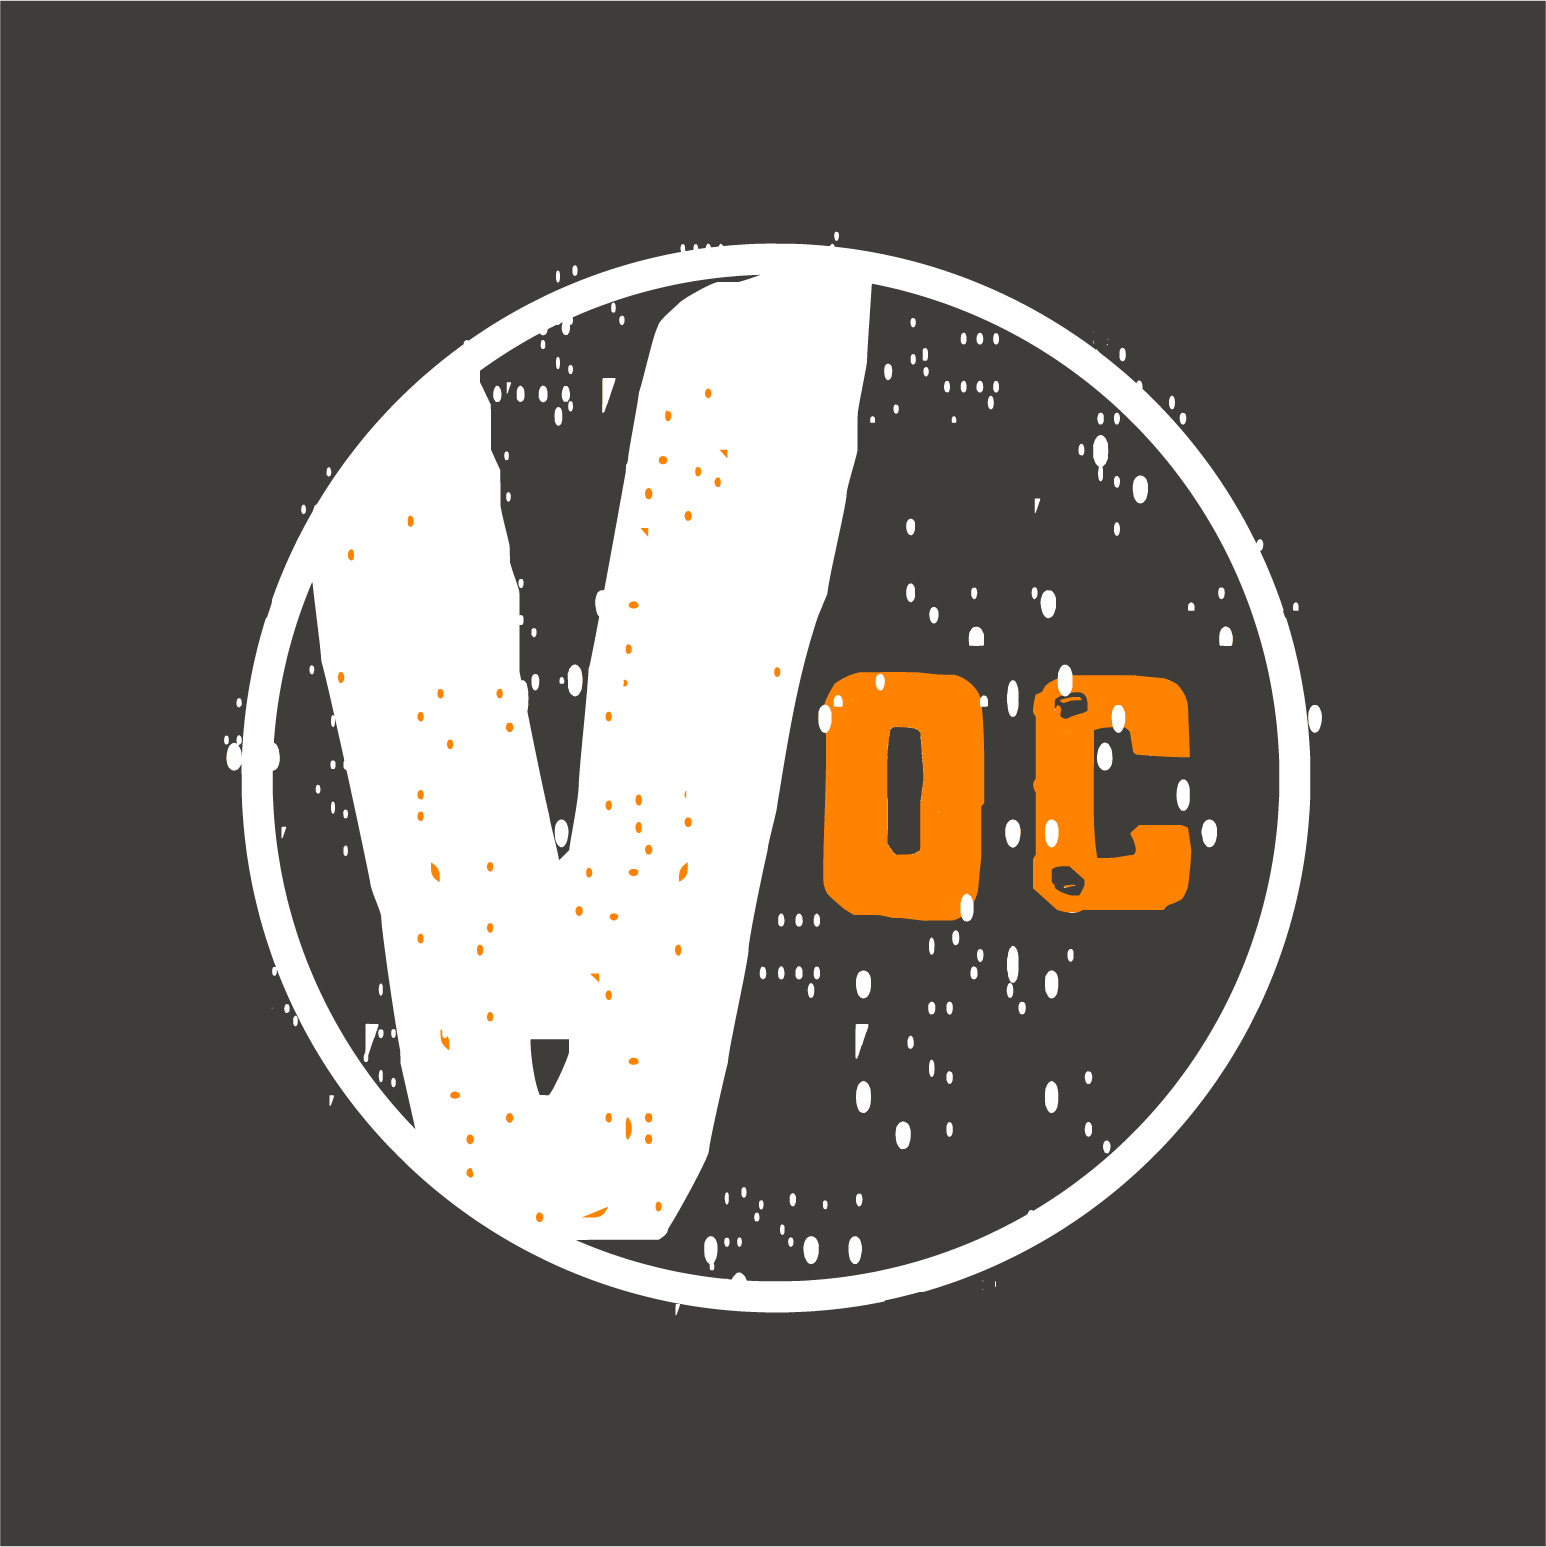 Voice of OC 2022 News Match Fundraiser: Noise of OC (Travel Mug) shirt design - zoomed